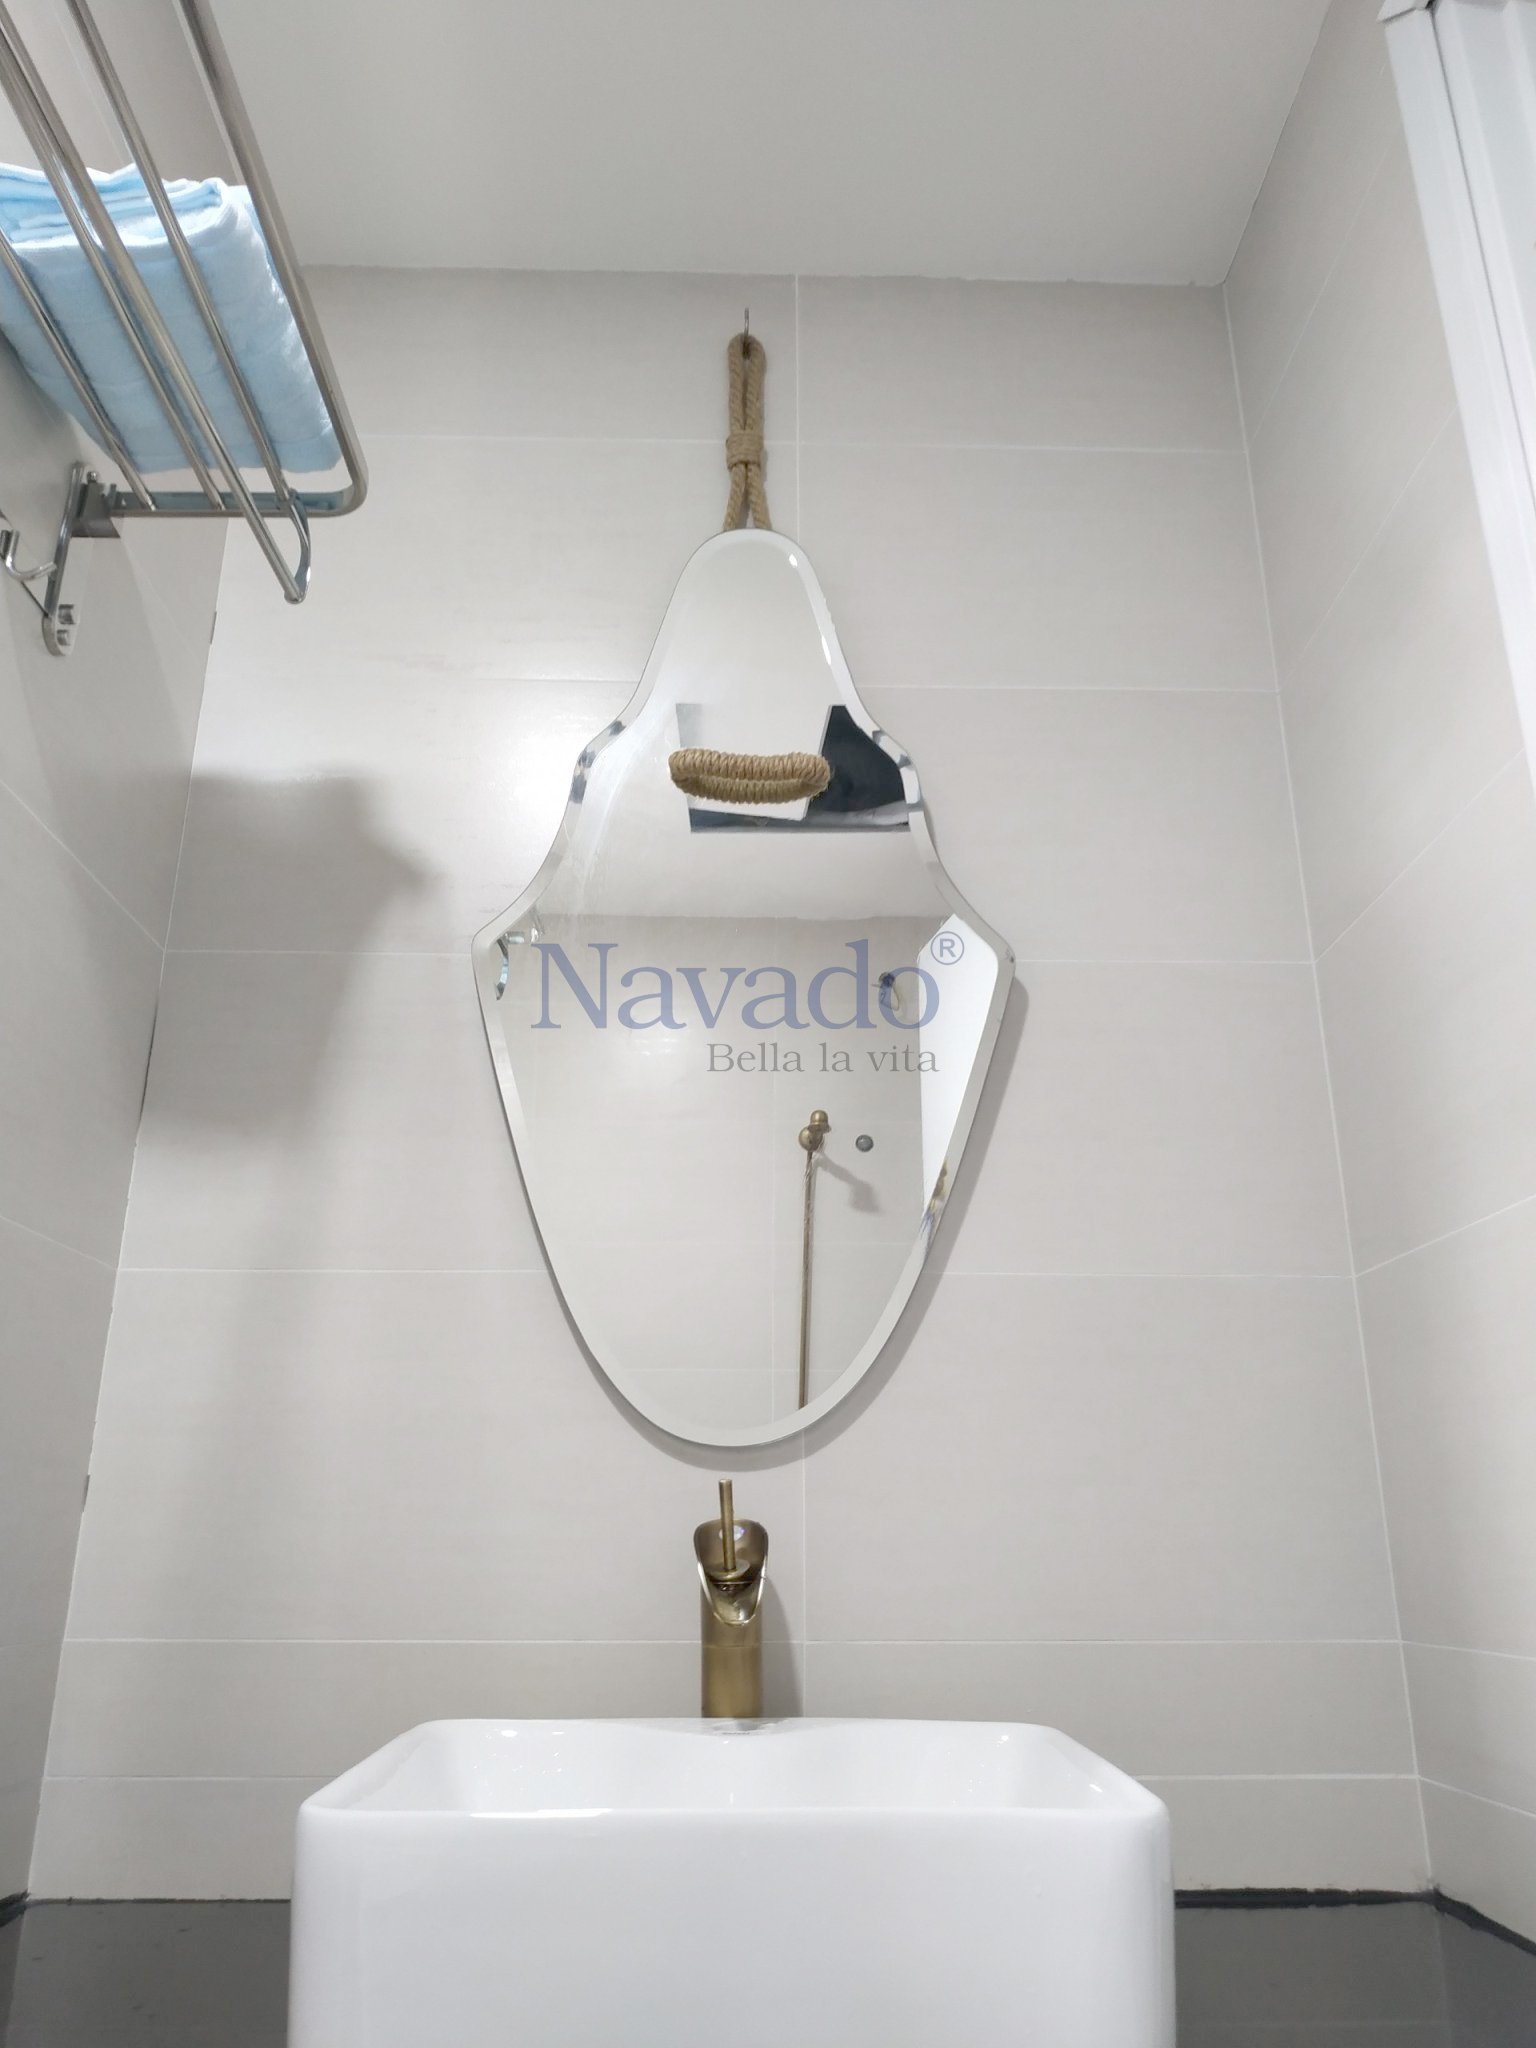 Sản phẩm Gương nhà tắm Navado mới nhất đã được nâng cấp với công nghệ tiên tiến giúp cho sản phẩm trở nên chắc chắn và bền đẹp hơn. Hơn nữa, thiết kế sang trọng, tinh tế và đẳng cấp của gương này sẽ làm cho không gian nhà tắm của bạn trở nên hiện đại và đầy cá tính.